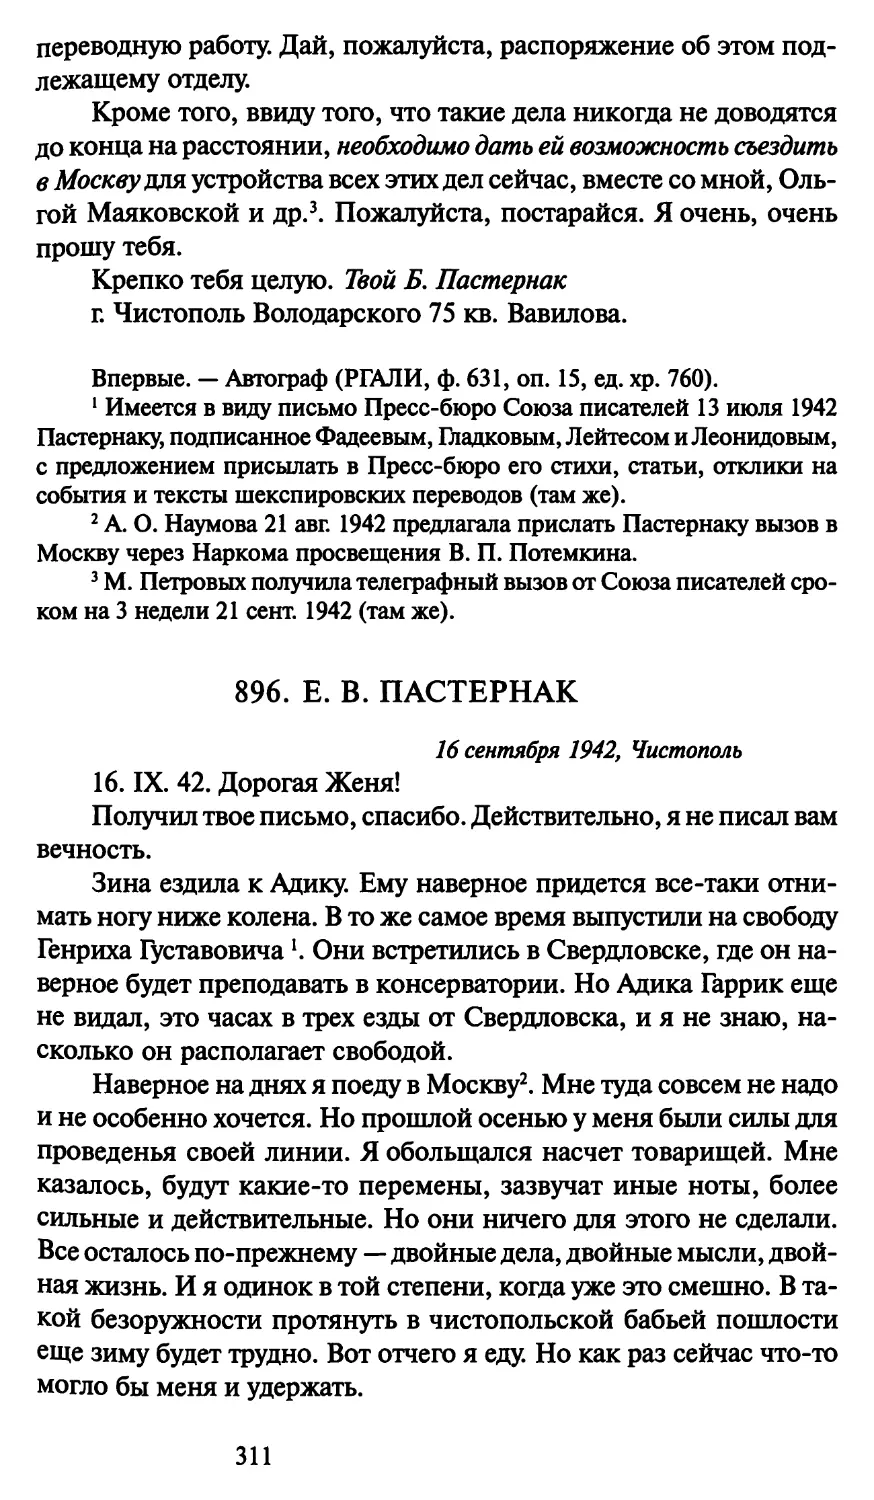 896. Е. В. Пастернак 16 сентября 1942